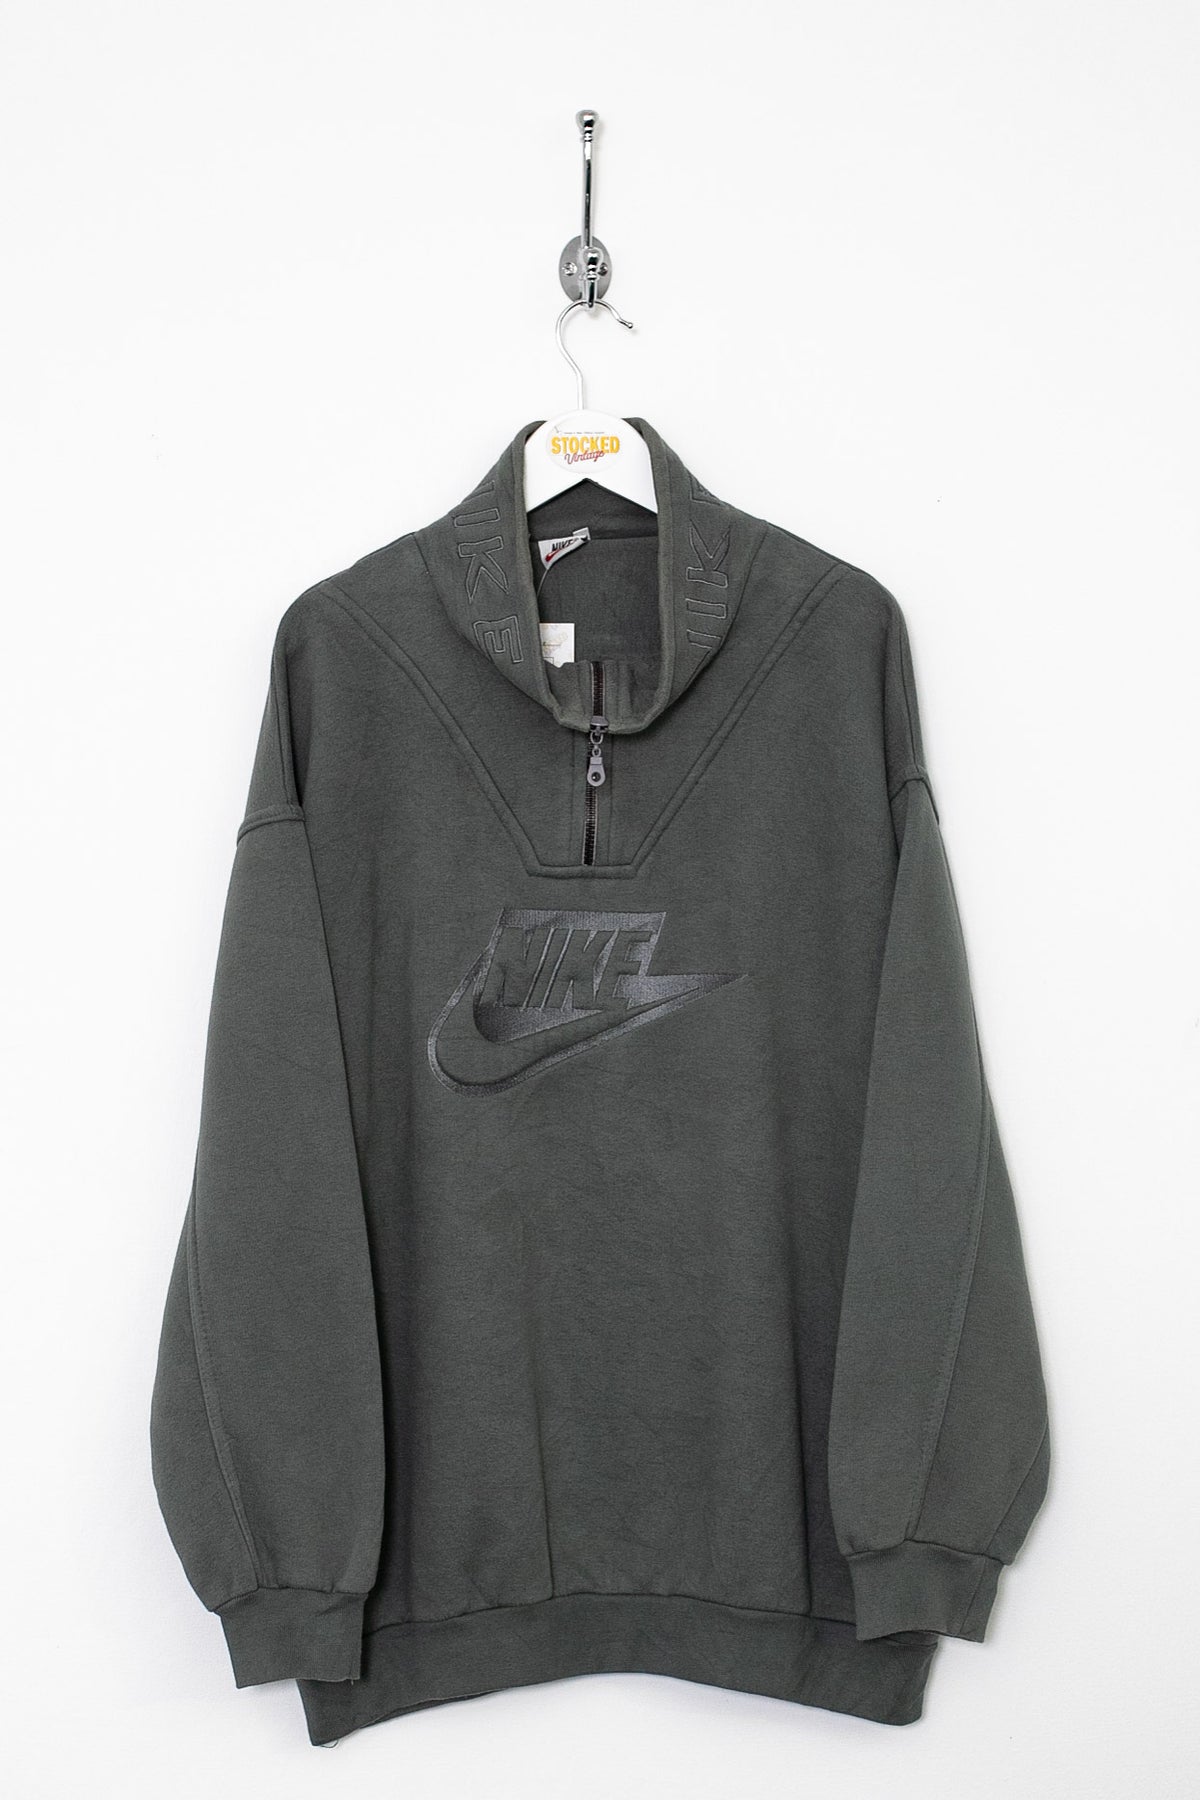 00s Nike 1/4 Zip Sweatshirt (L)